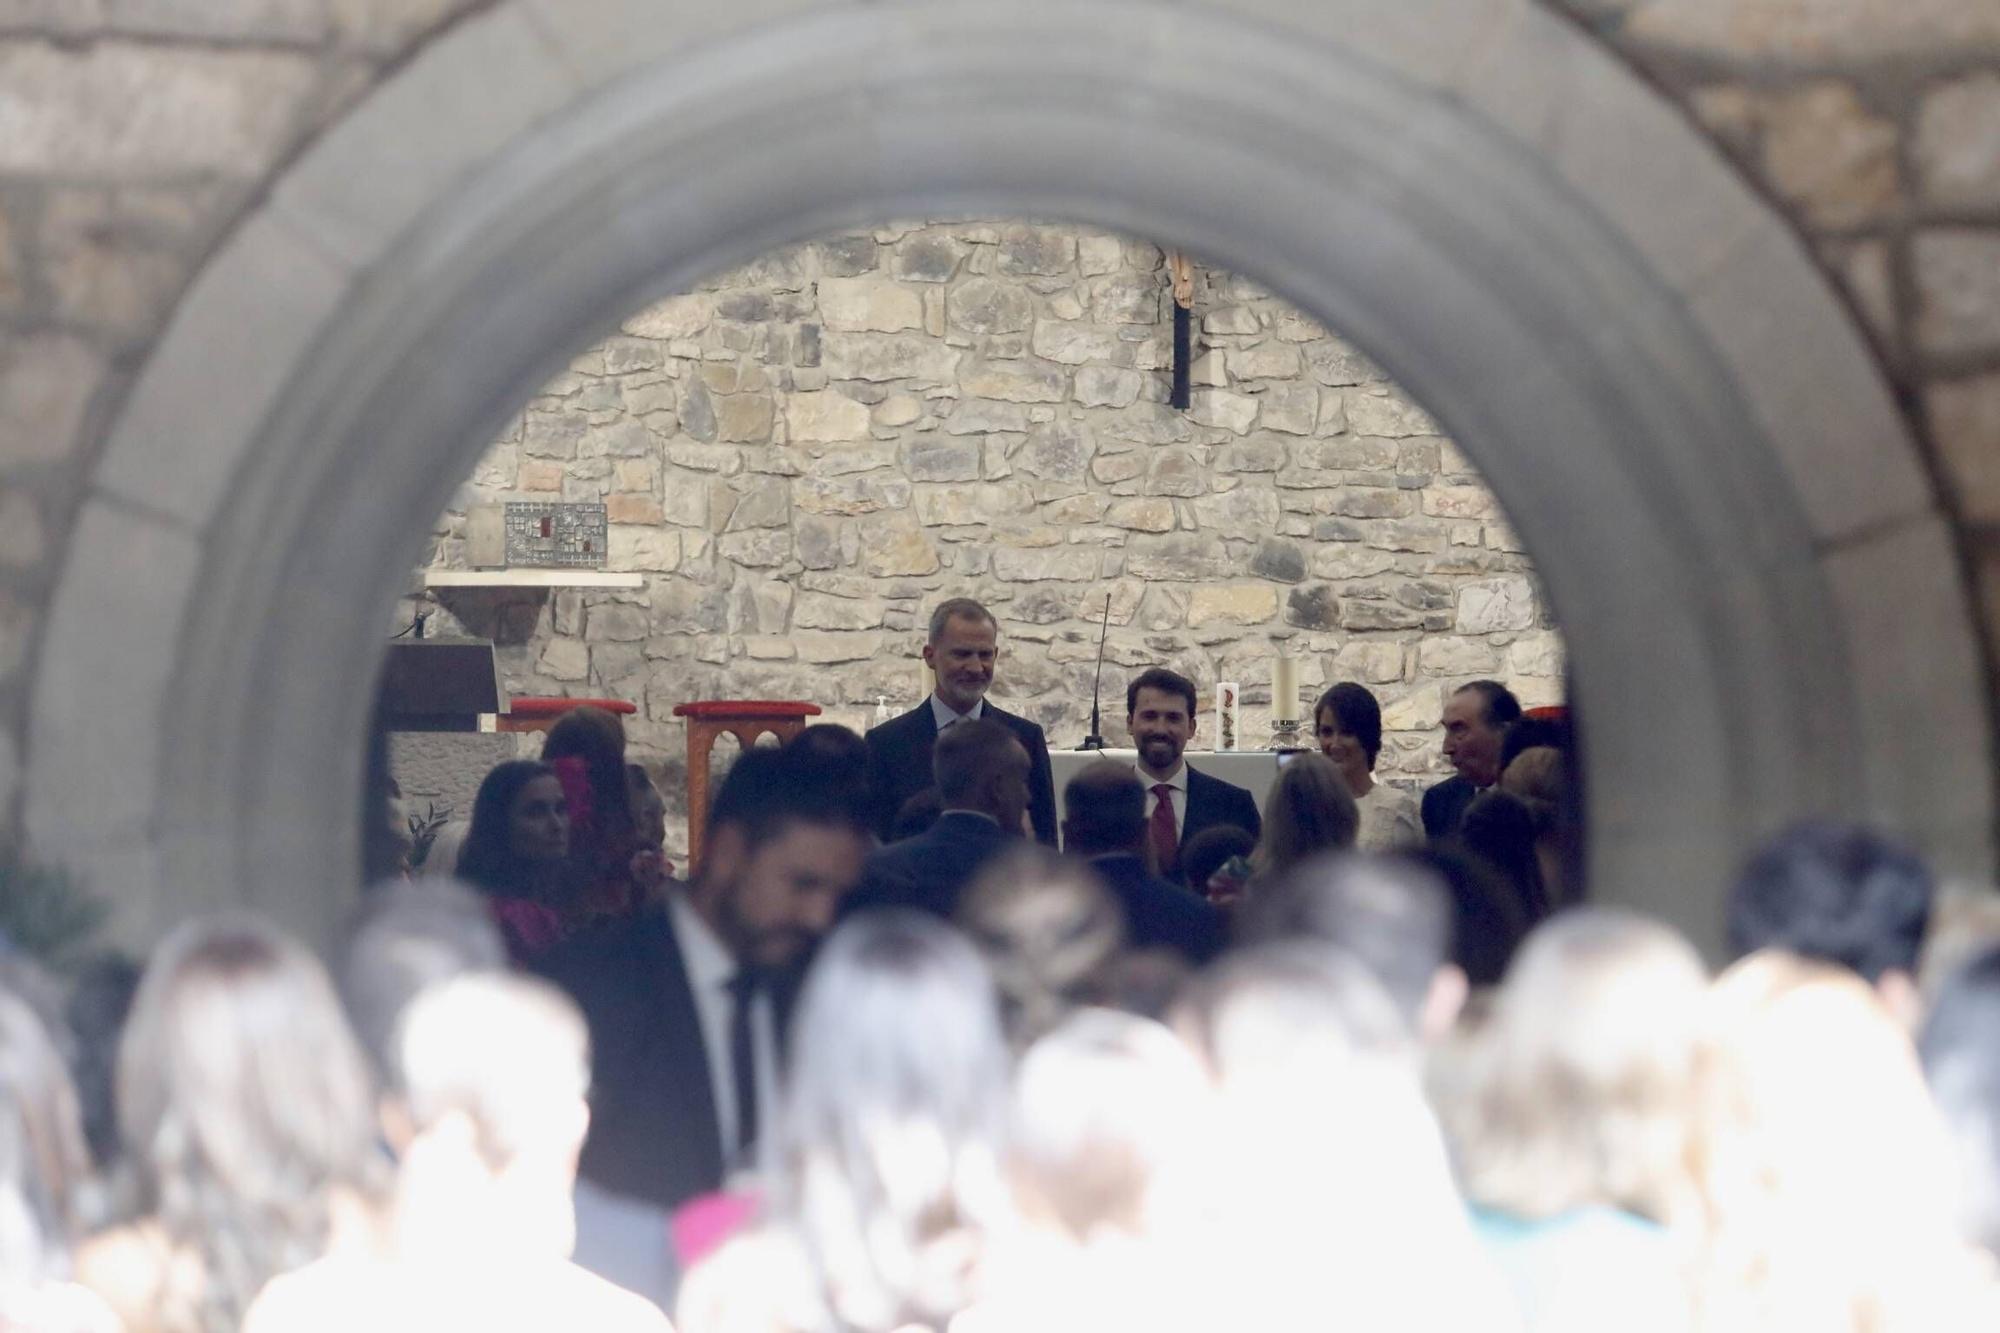 El Rey Felipe VI, testigo de excepción en la boda de su ahijado en Gijón (en imágenes)